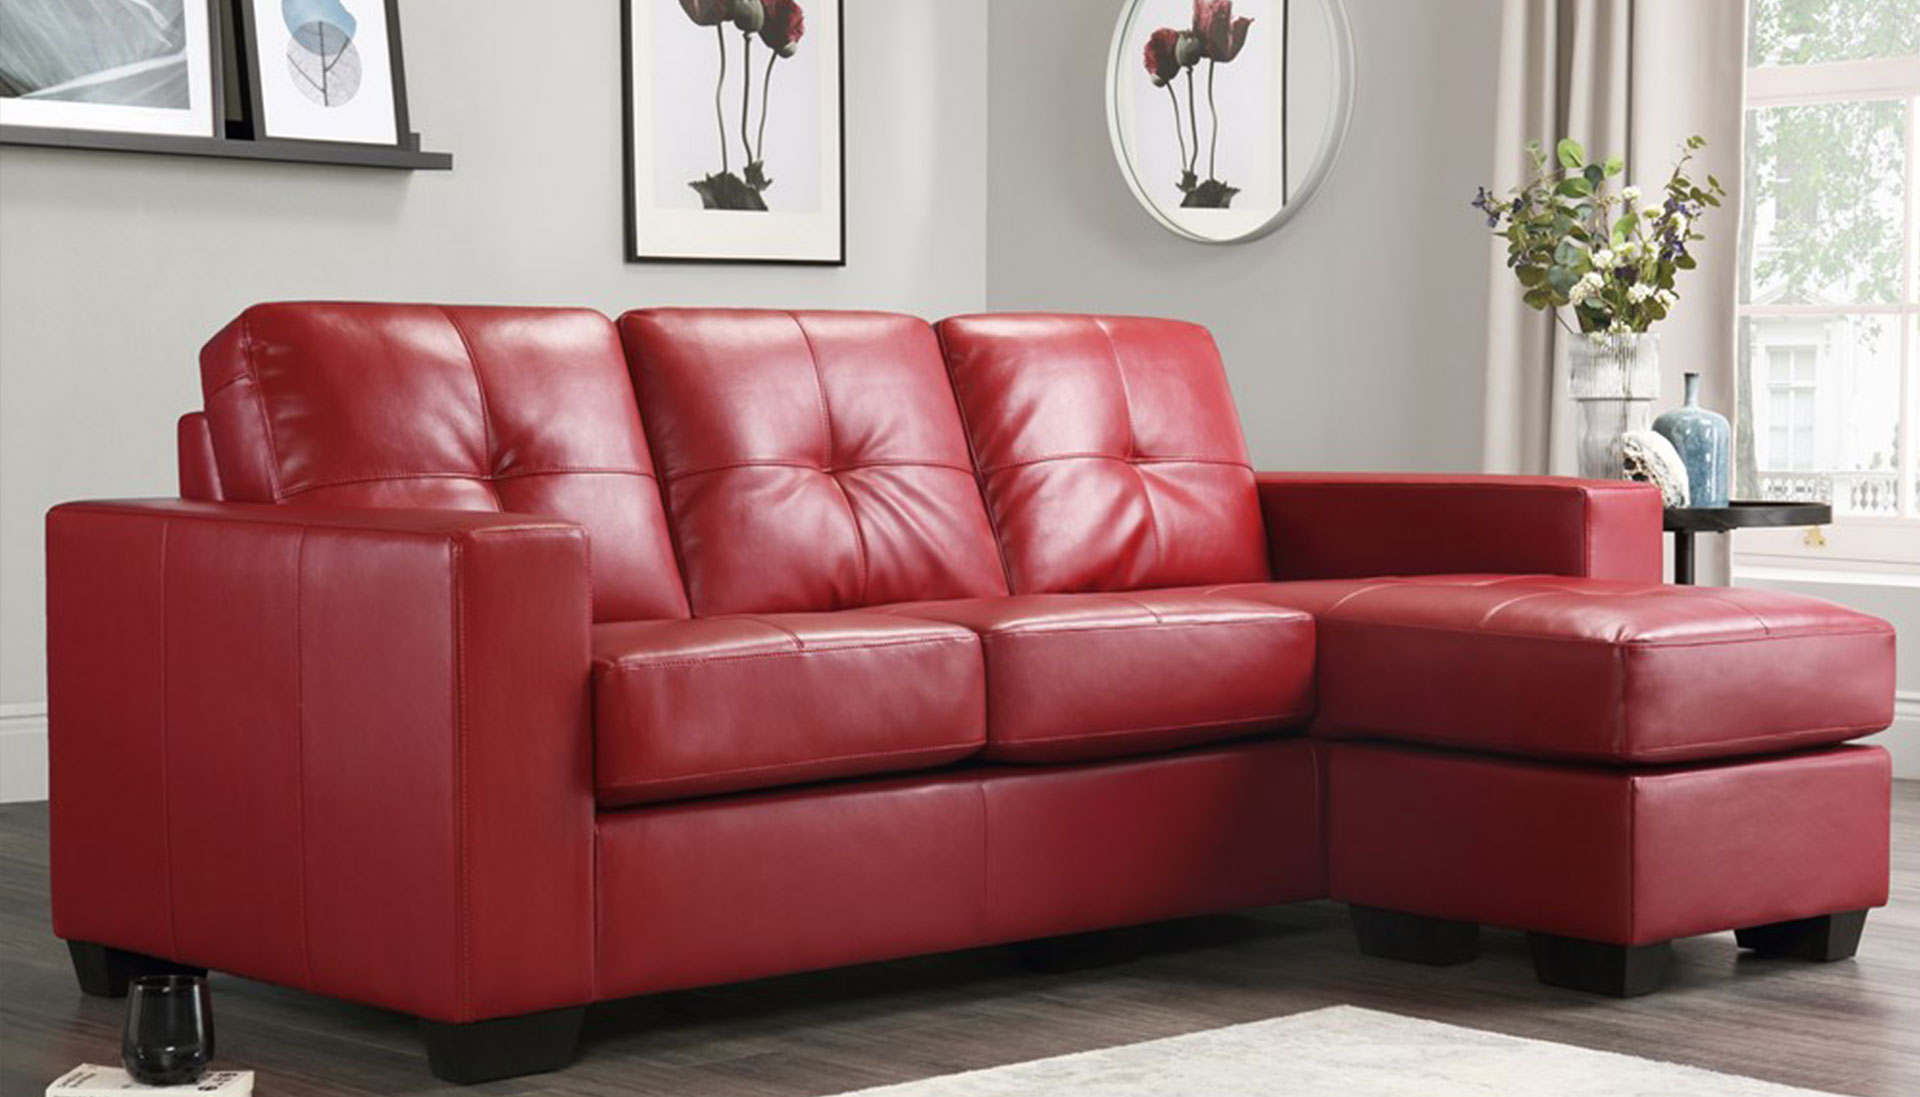 Sofa gỗ hiện đại GHS-8247